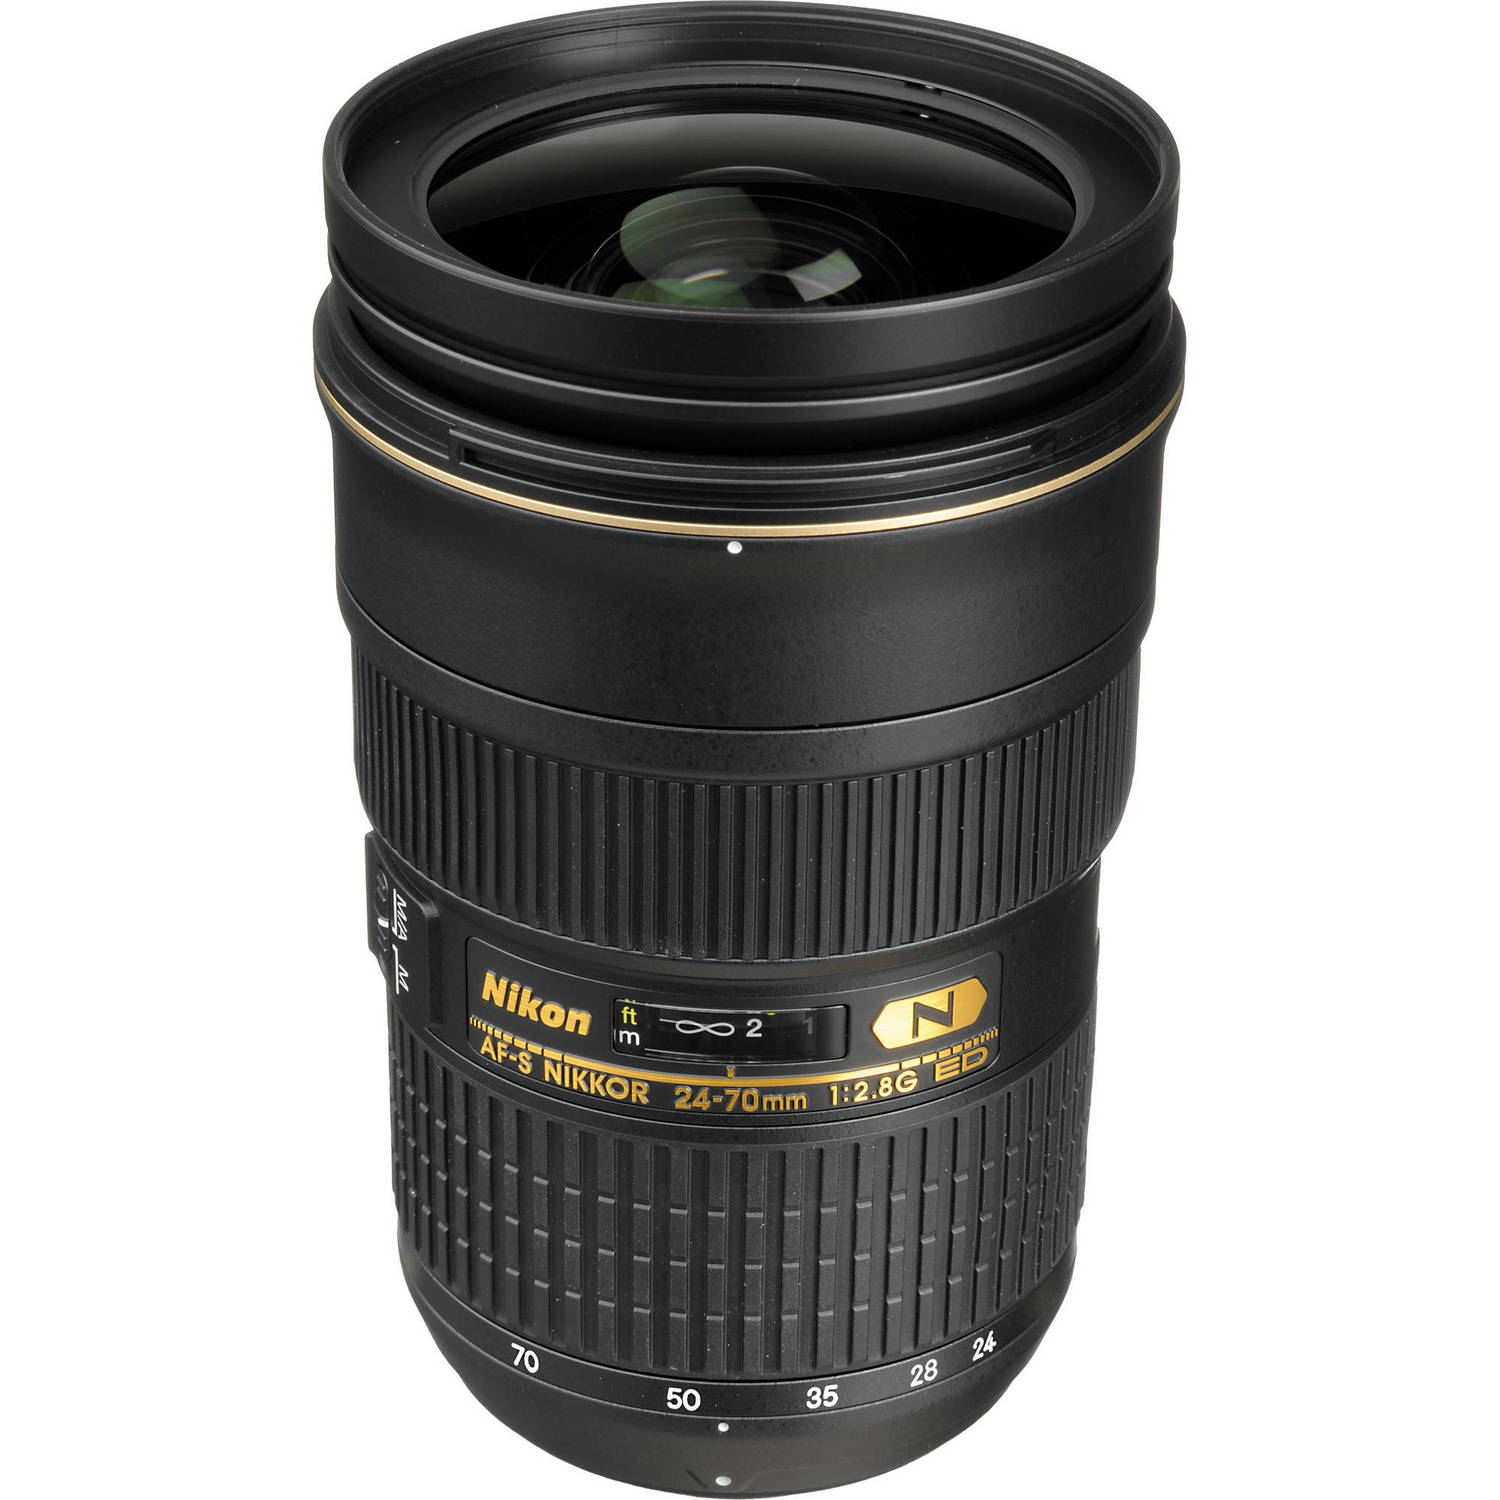 Nikon AF-S Nikkor 24-70mm f/2.8G ED Autofocus Lens (Black) - image 3 of 6